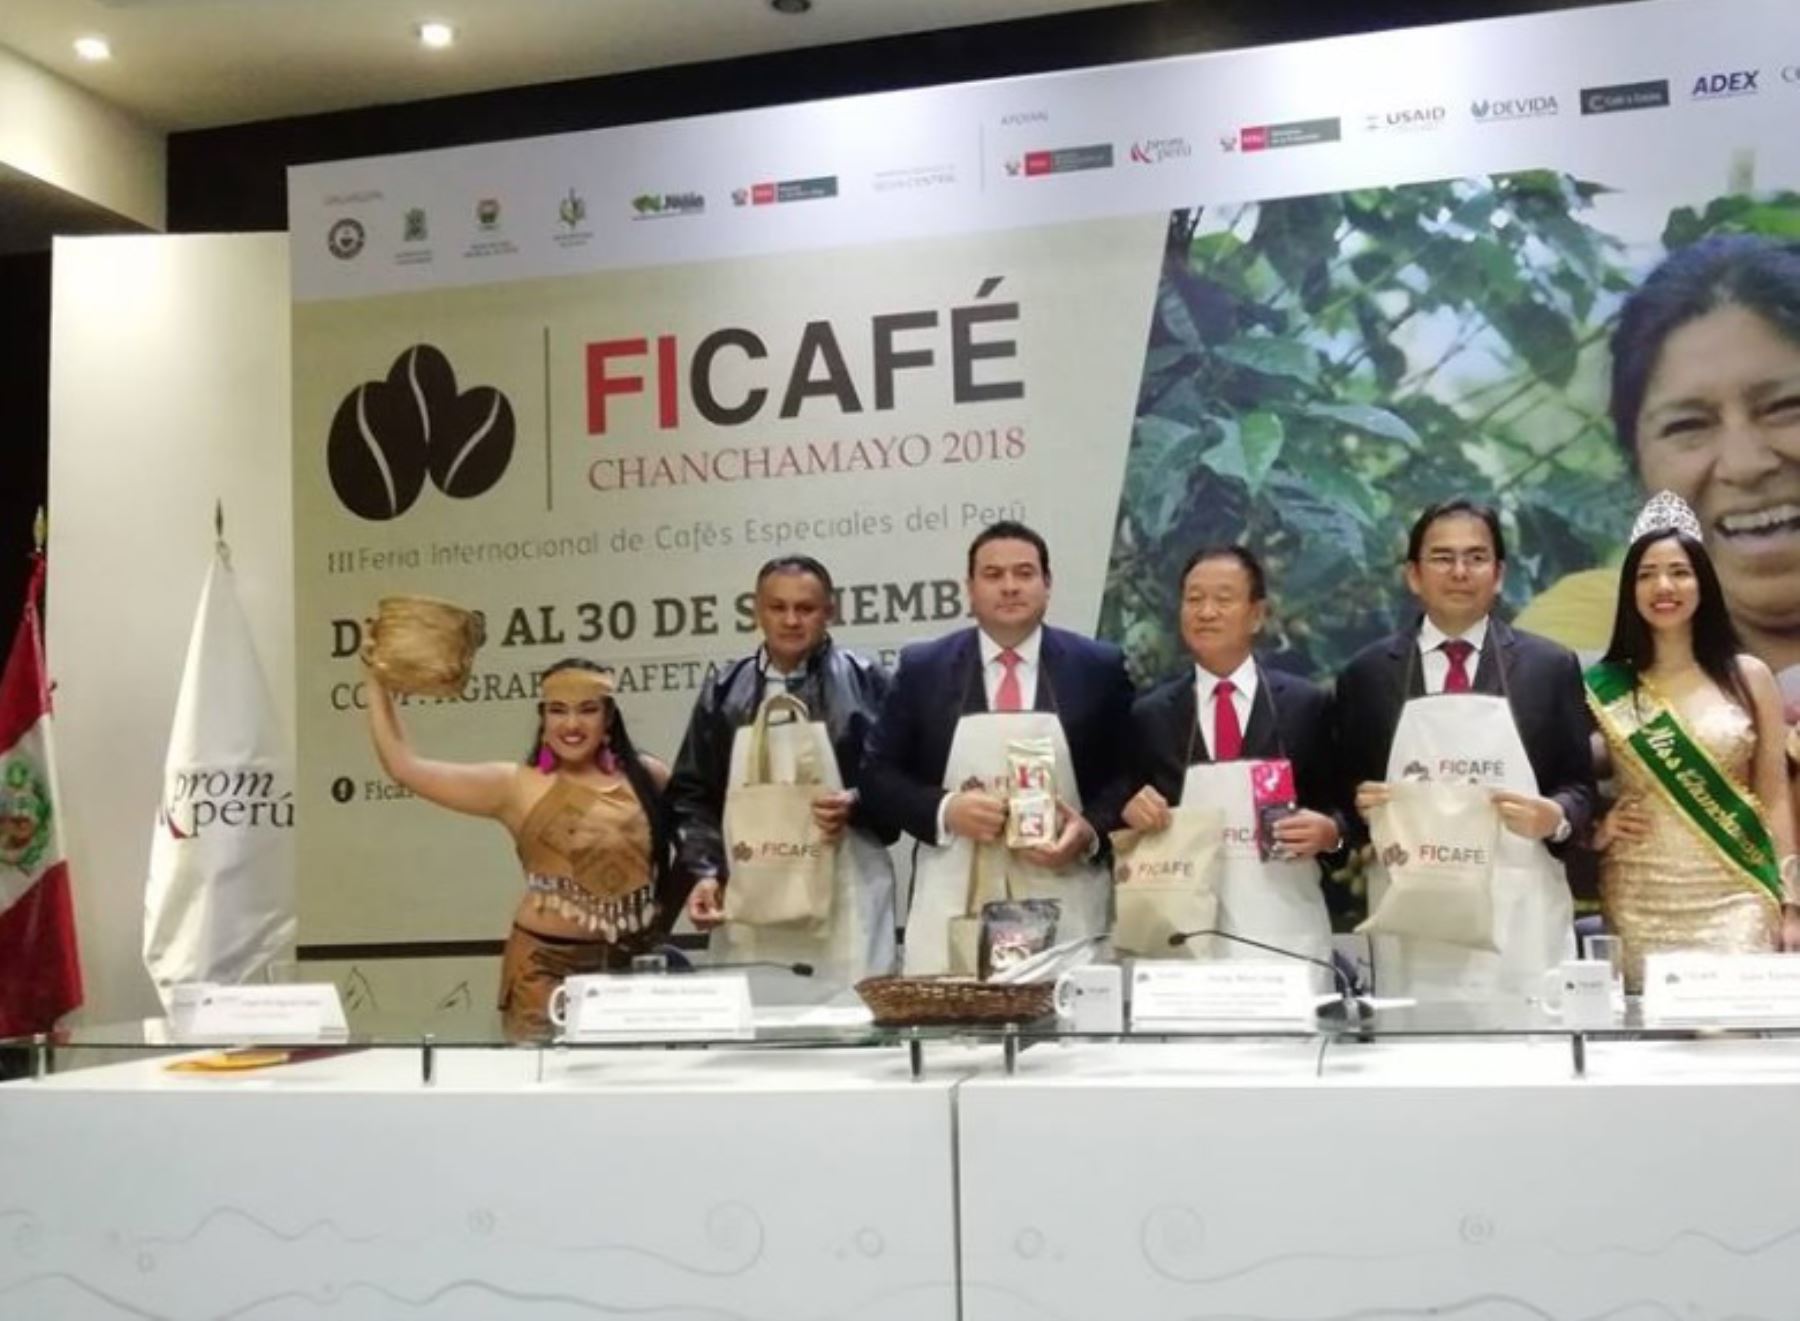 Alrededor de 10,000 visitantes, entre nacionales y extranjeros, proyecta recibir la tercera edición de la Feria Internacional de Cafés Especiales (Ficafé) 2018, que se realizará del 28 al 30 de setiembre en la ciudad de Chanchamayo, región Junín.